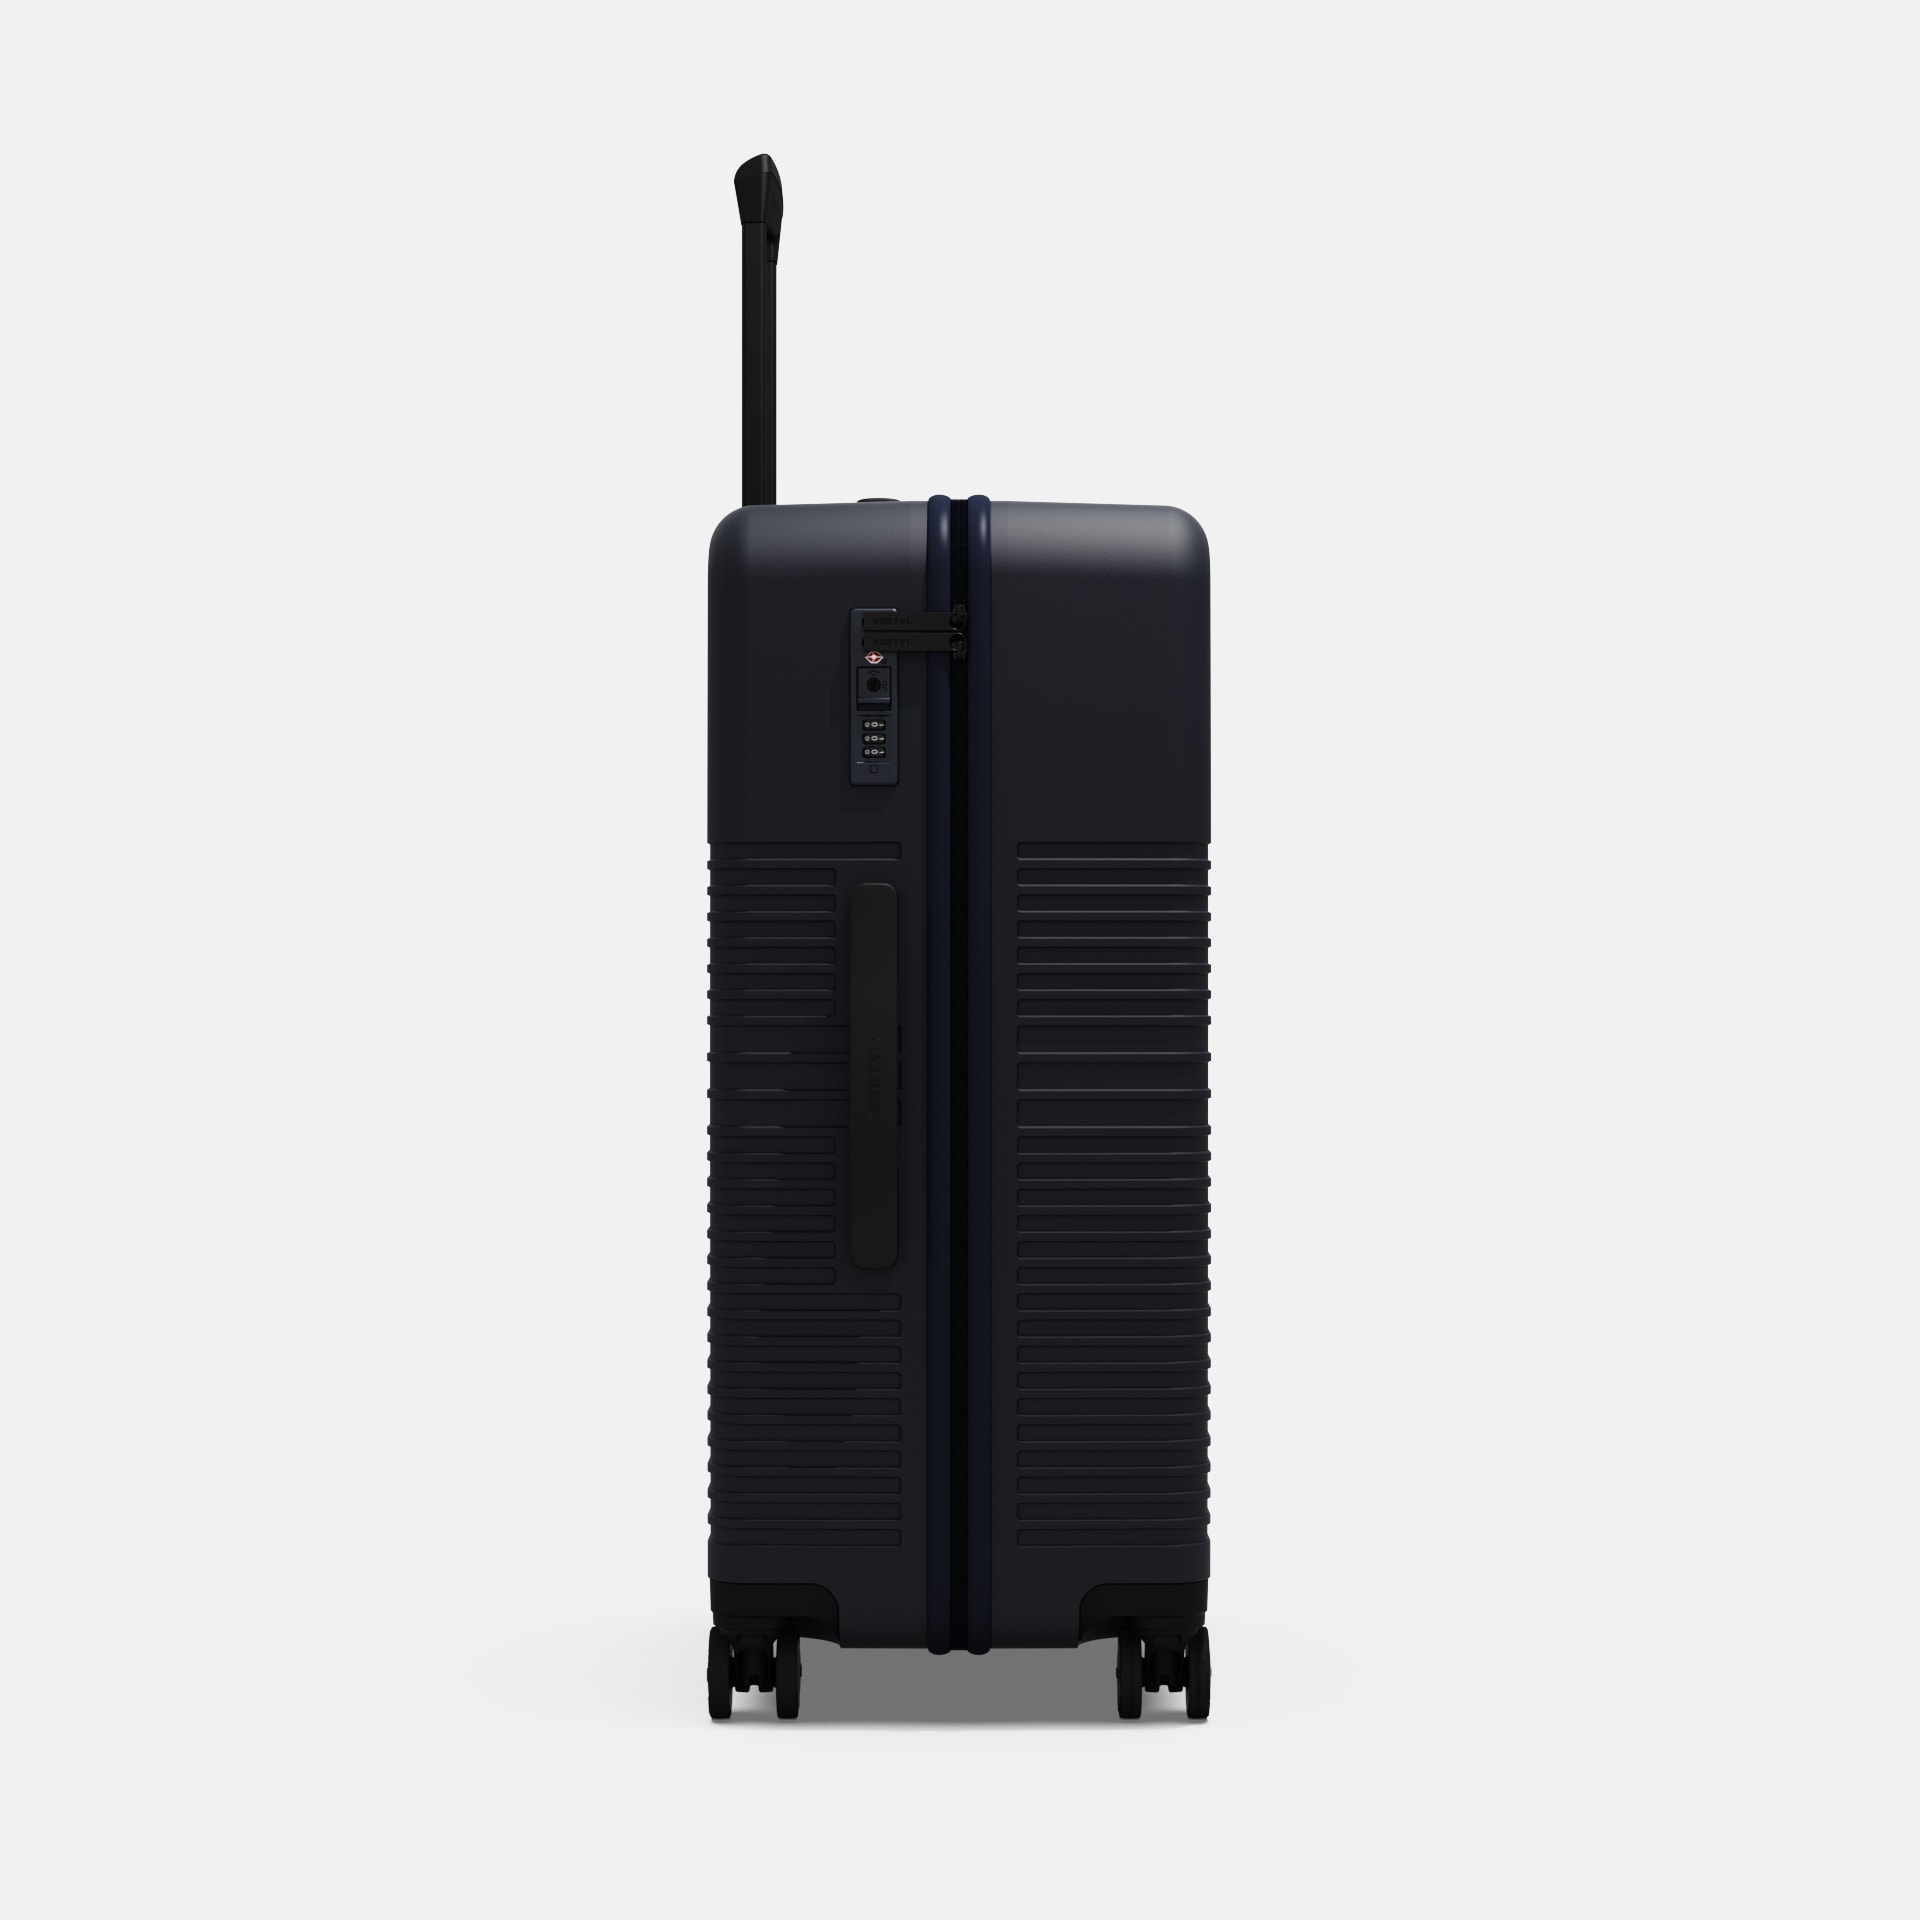 Nortvi check-in suitcase dark blue